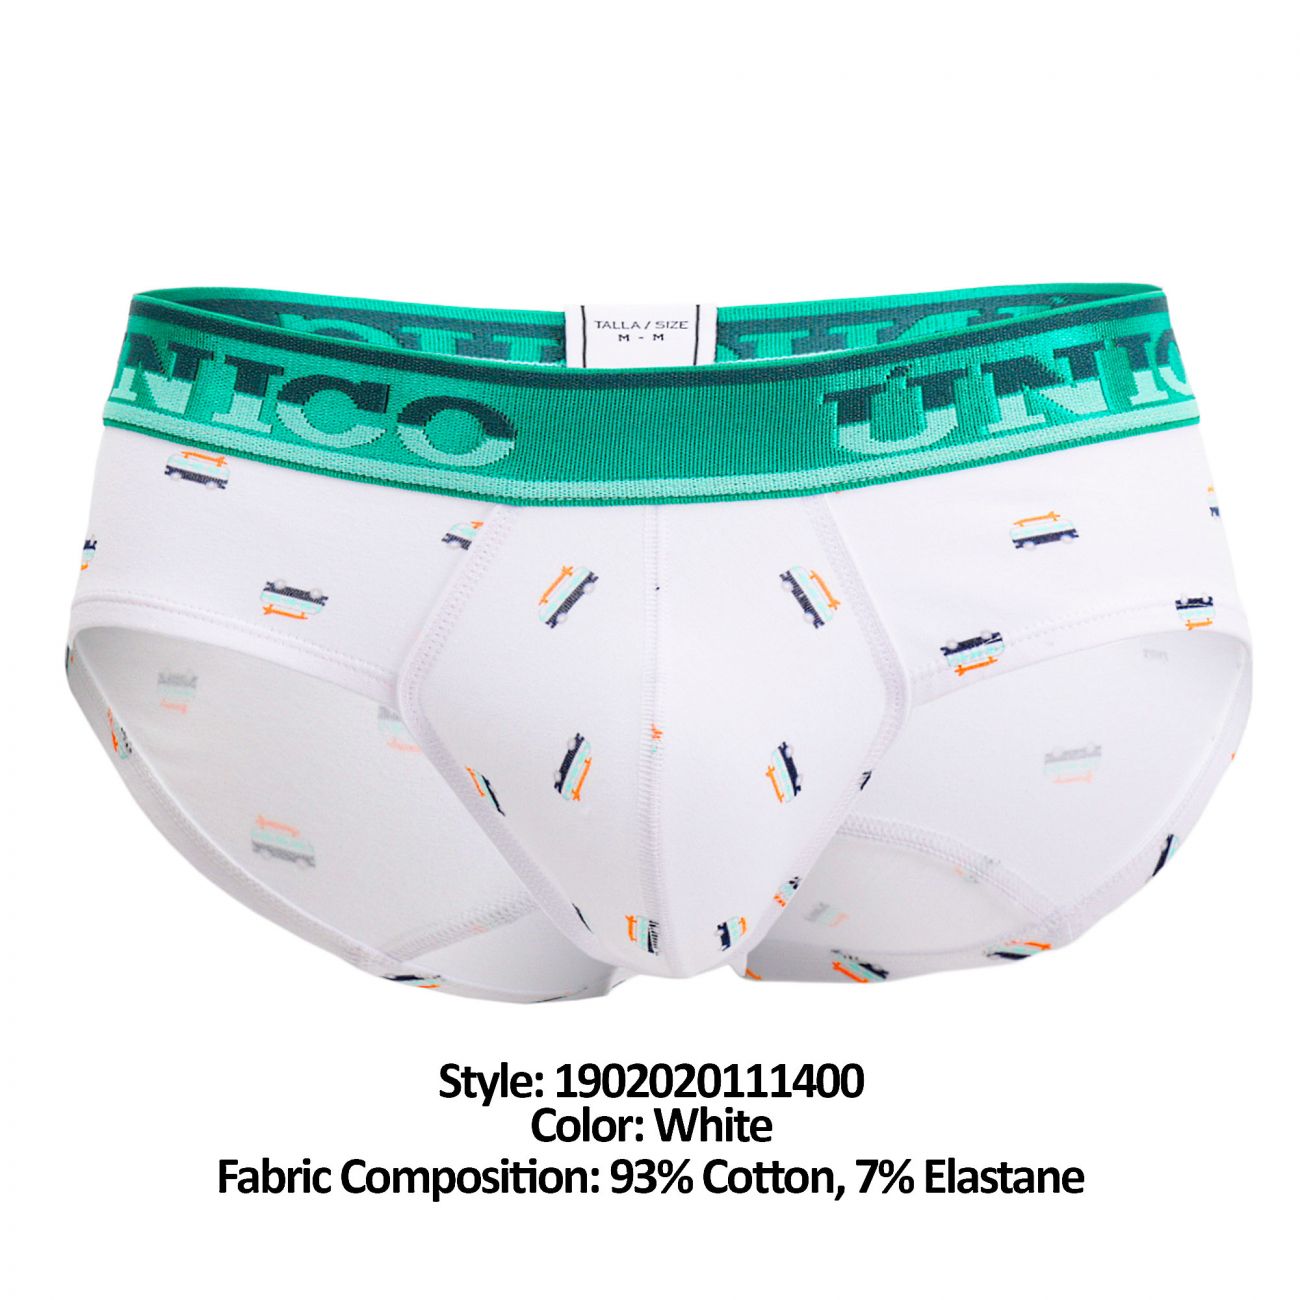 under-yours - Briefs Fusion - Unico - Mens Underwear